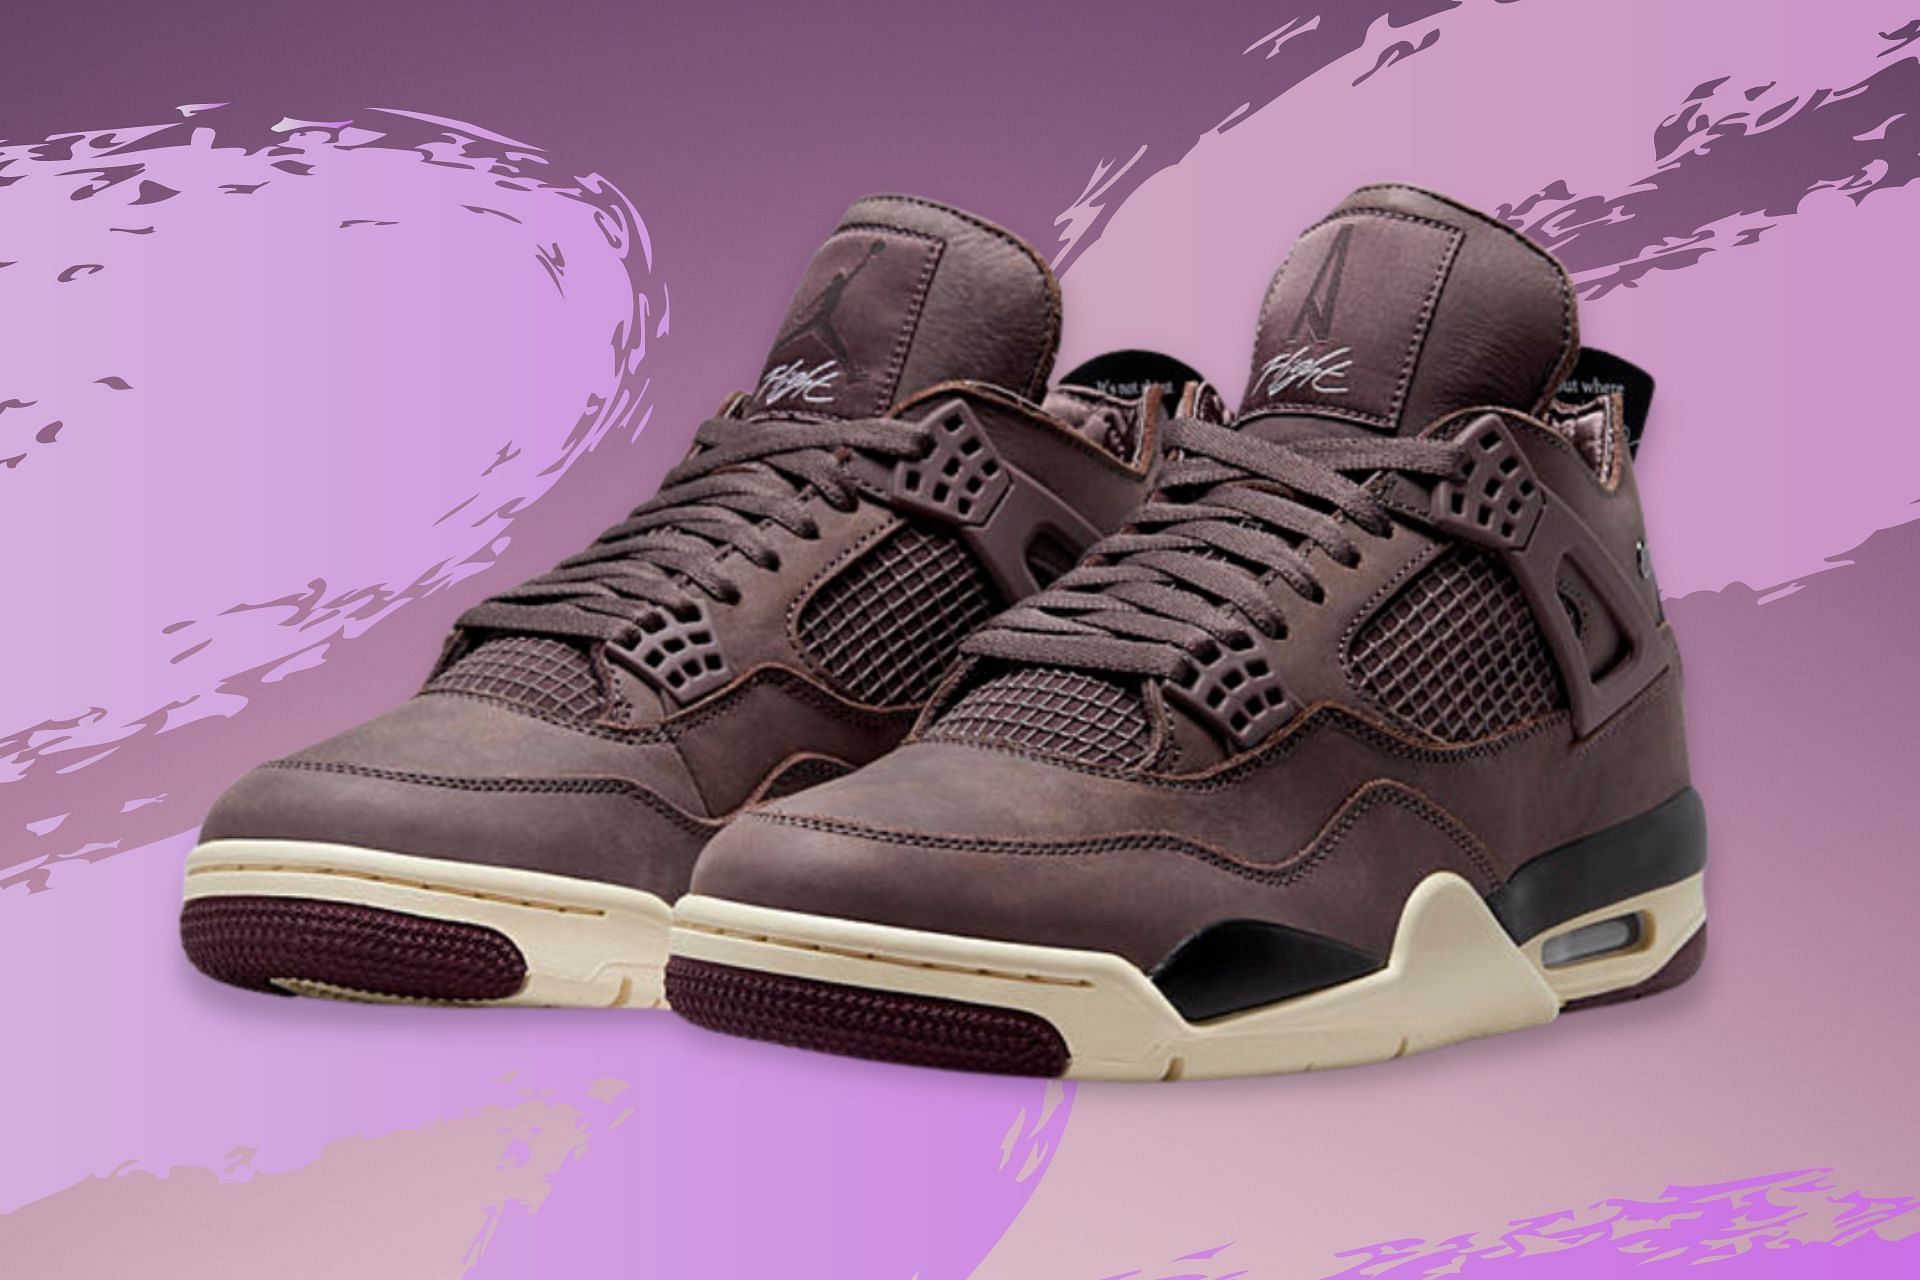 Air Jordan 4 x A Ma Maniere shoes (Image via Nike)